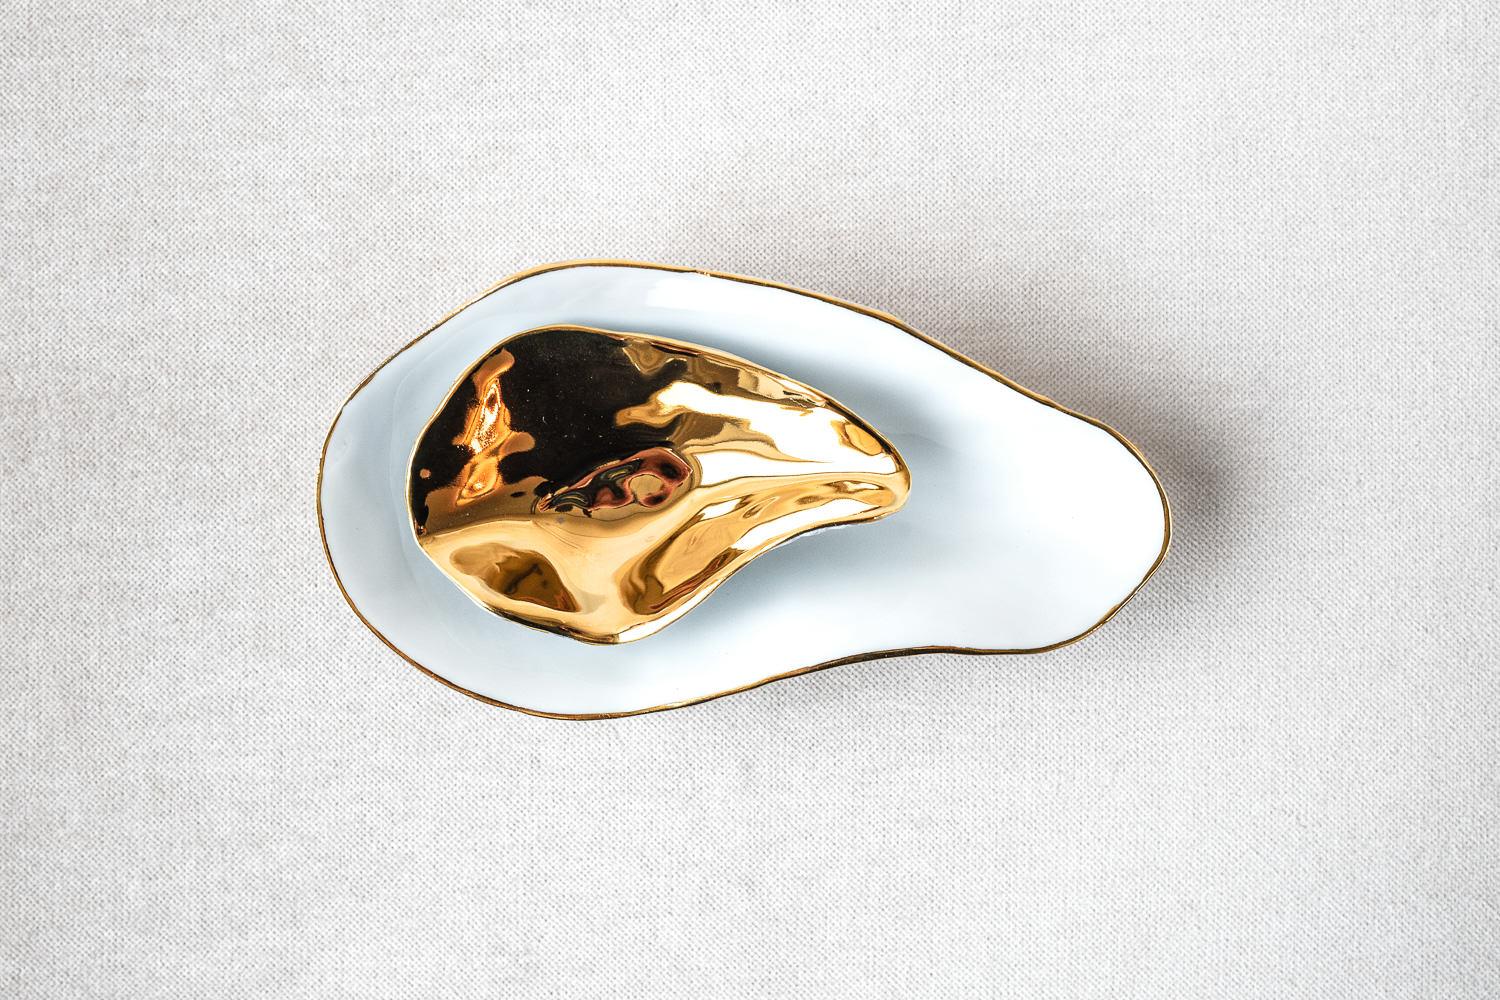 French Set of 2 Indulge Nº3 / 24k Golden Rim / Side Dish, Handmade Porcelain Tableware For Sale